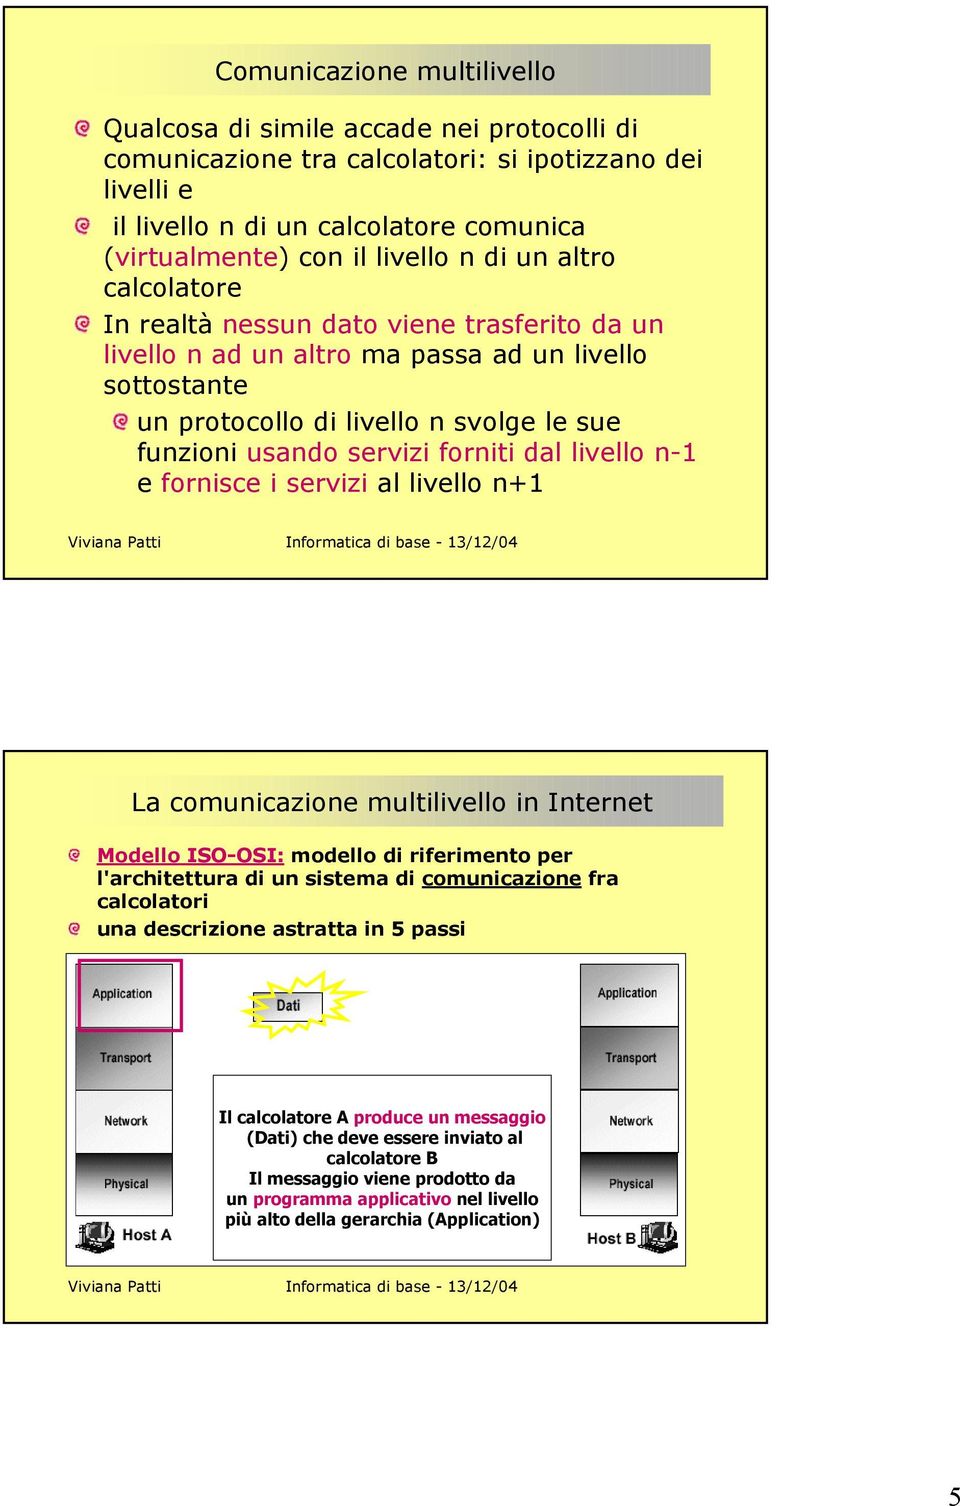 forniti dal livello n-1 e fornisce i servizi al livello n+1 La comunicazione multilivello in Internet Modello ISO-OSI: modello di riferimento per l'architettura di un sistema di comunicazione fra